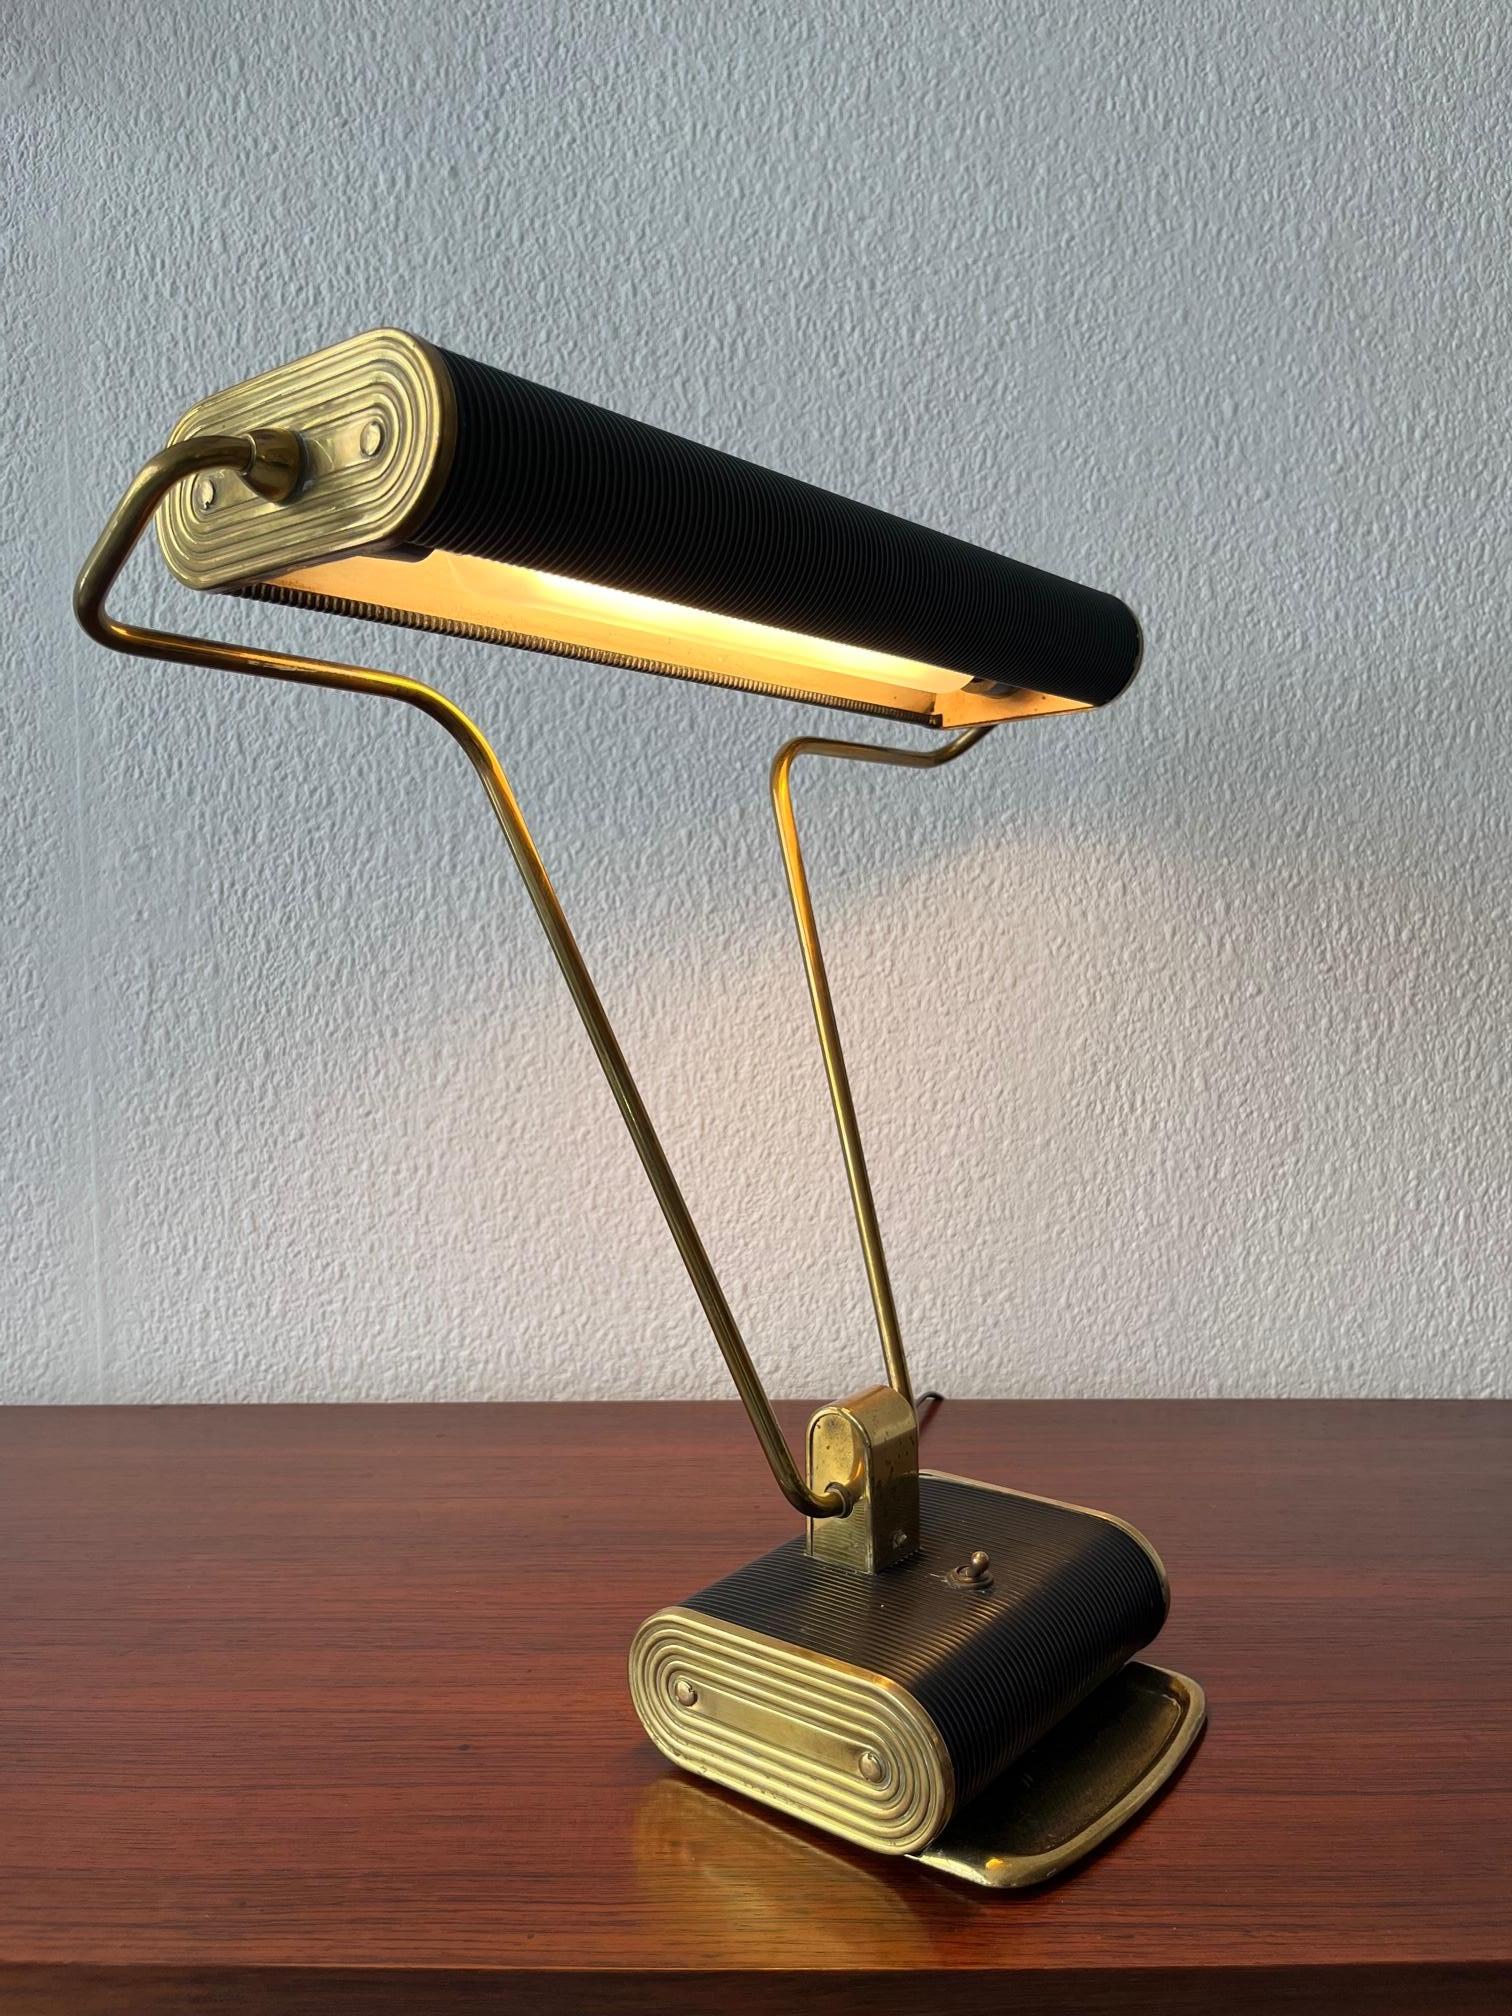 Fantastische Schreibtischlampe Nr. 71 aus Messing und schwarzem Metall von Eileen Gray, hergestellt von Jumo in Frankreich, ca. 1930s
Der Schirm und der Stiel sind verstellbar und können in verschiedenen Positionen verwendet werden.
Die Glühbirne